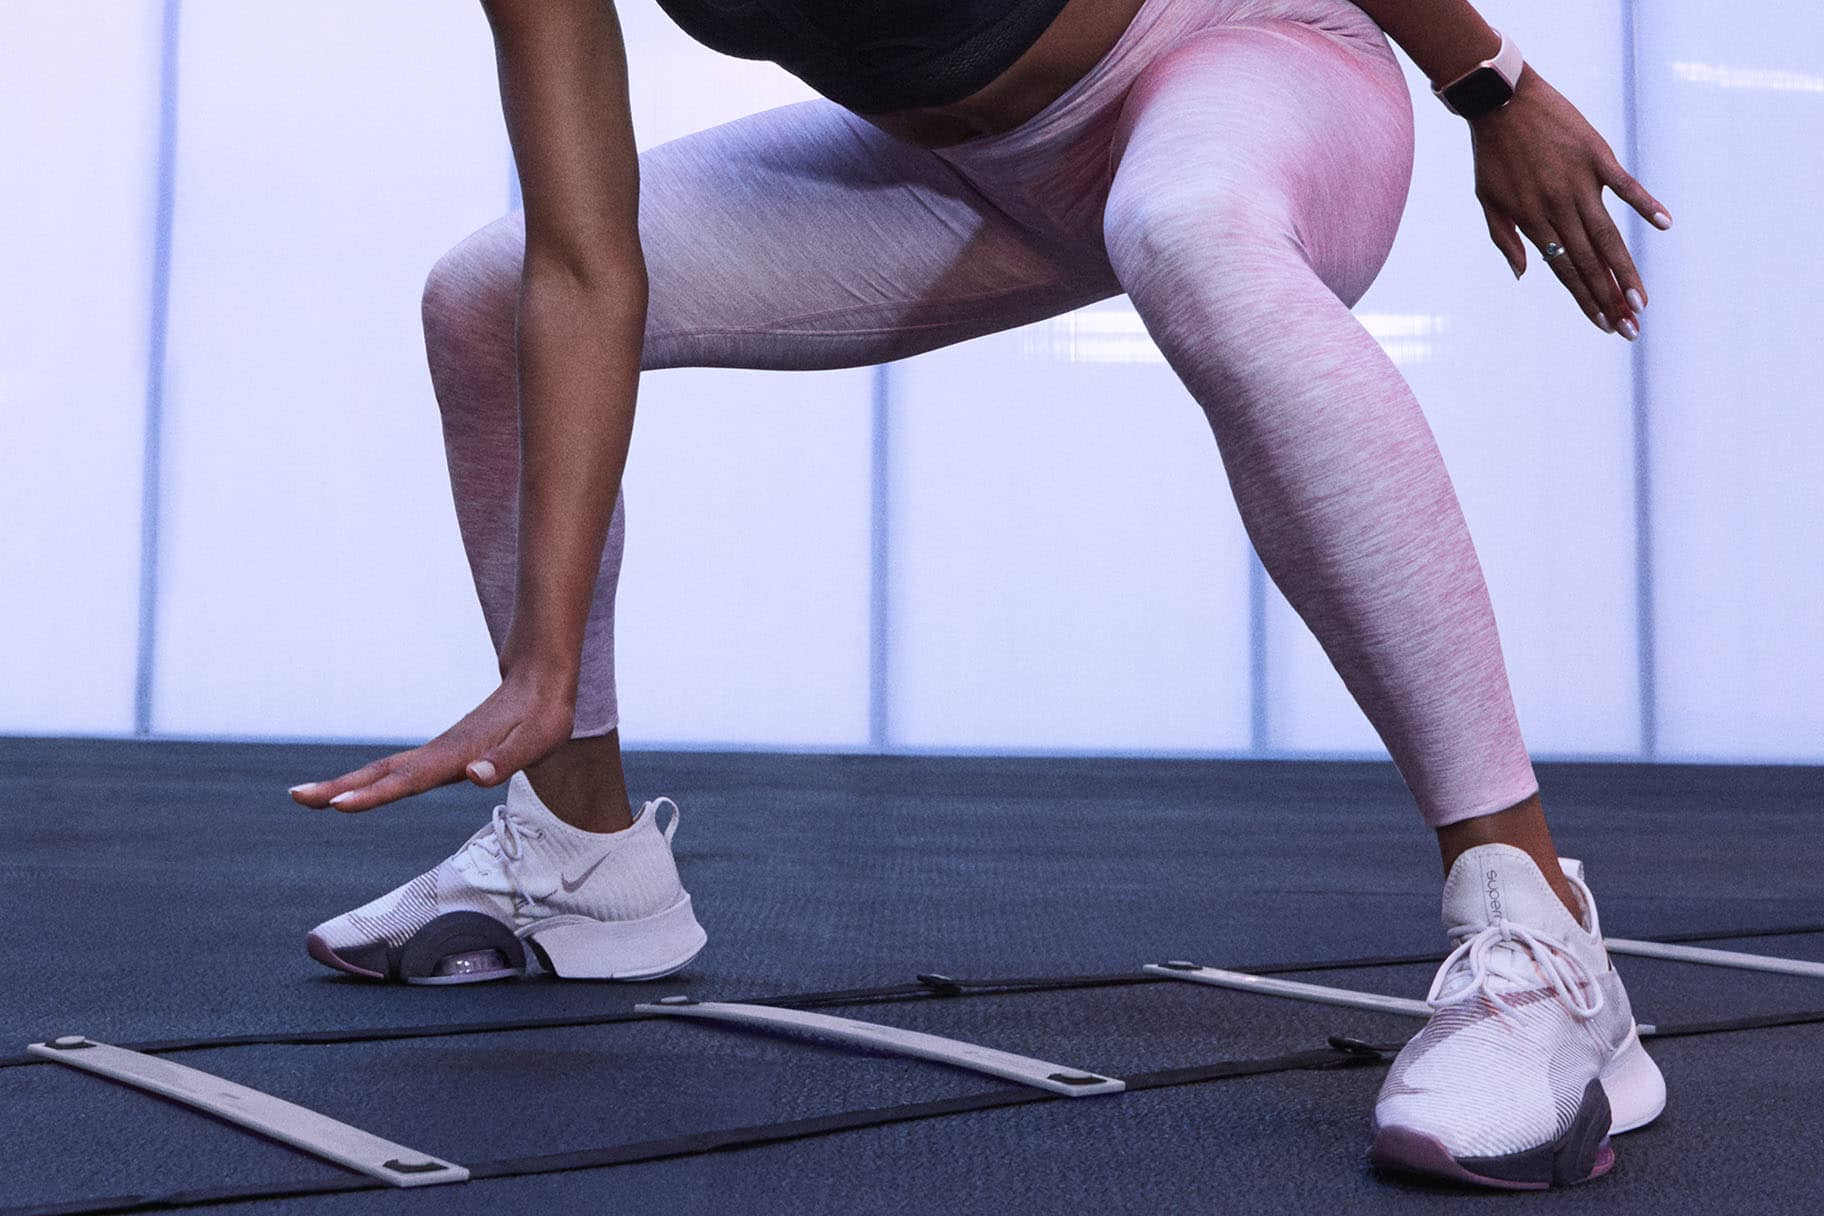 Quali sono le migliori scarpe Nike per gli squat?